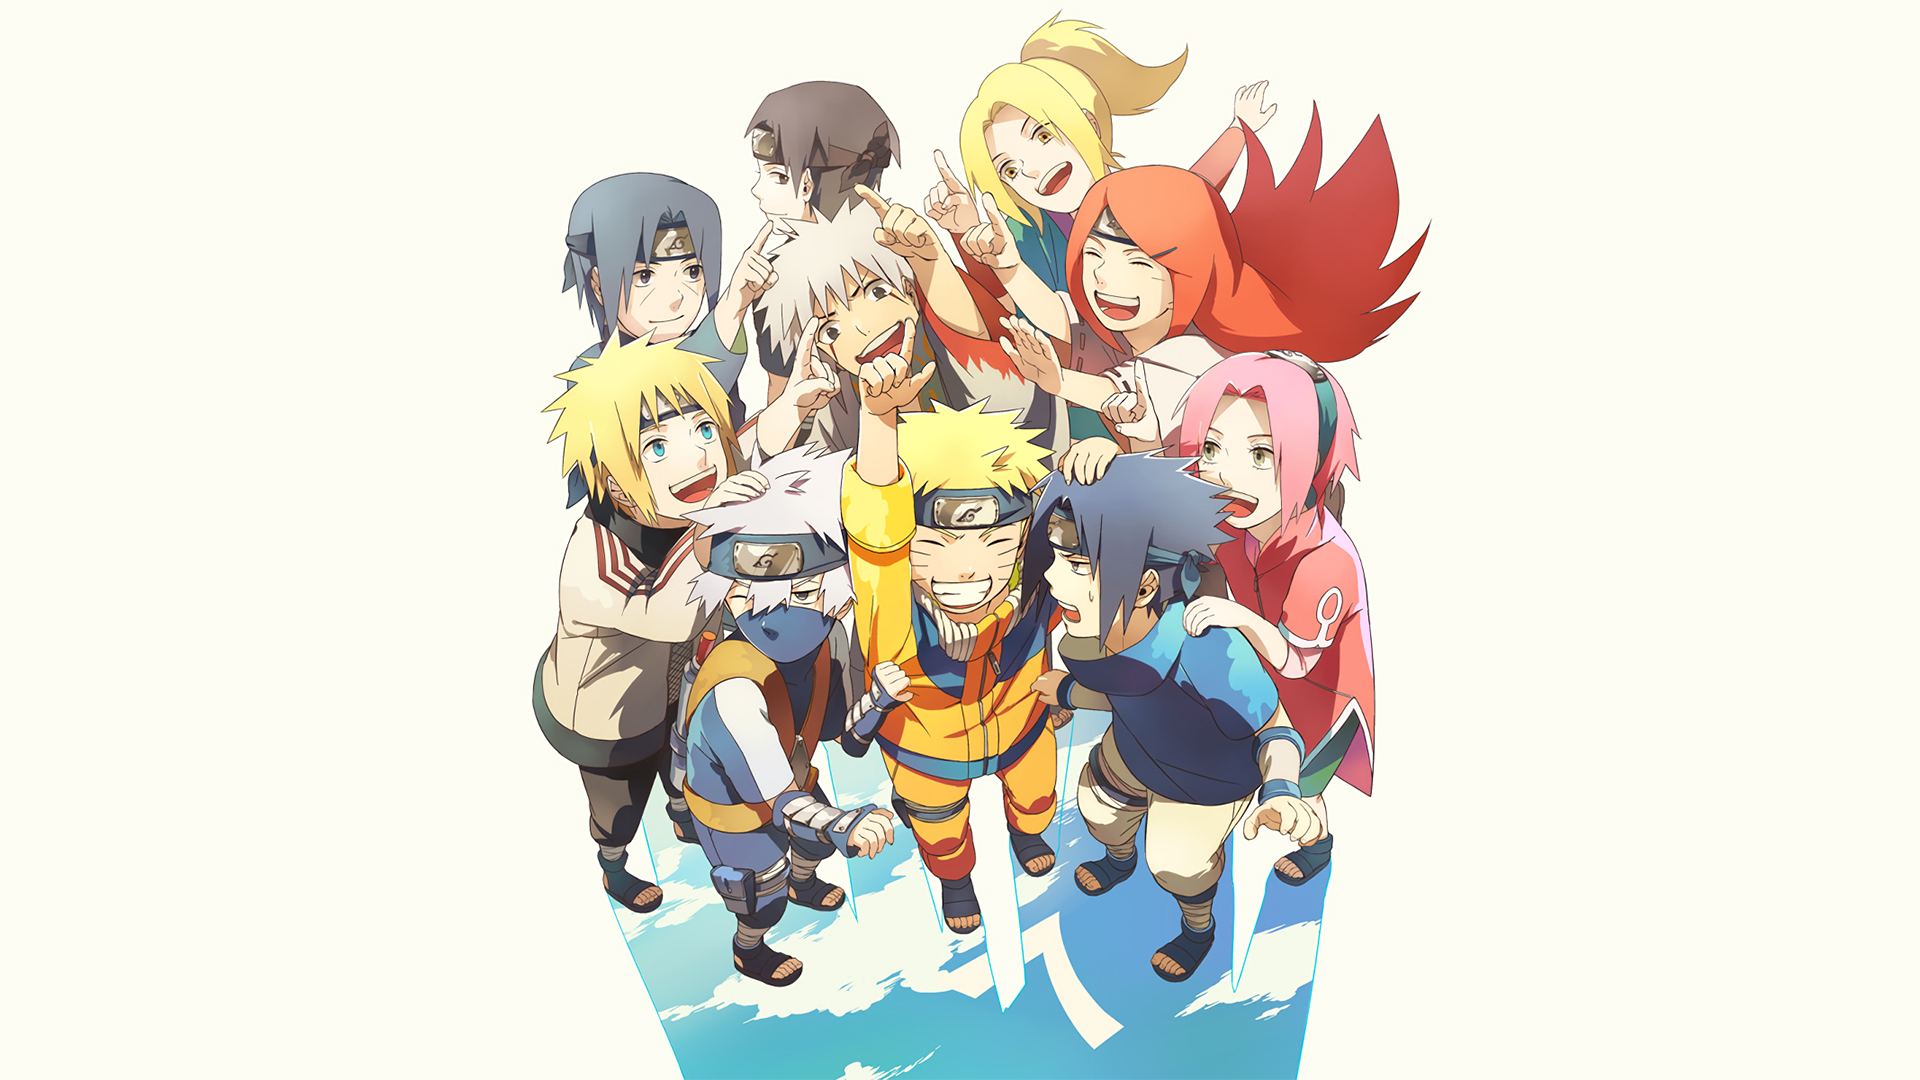 Wallpaper Naruto, Hatake Kakashi, NARUTO, Uzumaki Naruto, Fanart for mobile  and desktop, section сёнэн, resolution 2488x1748 - download